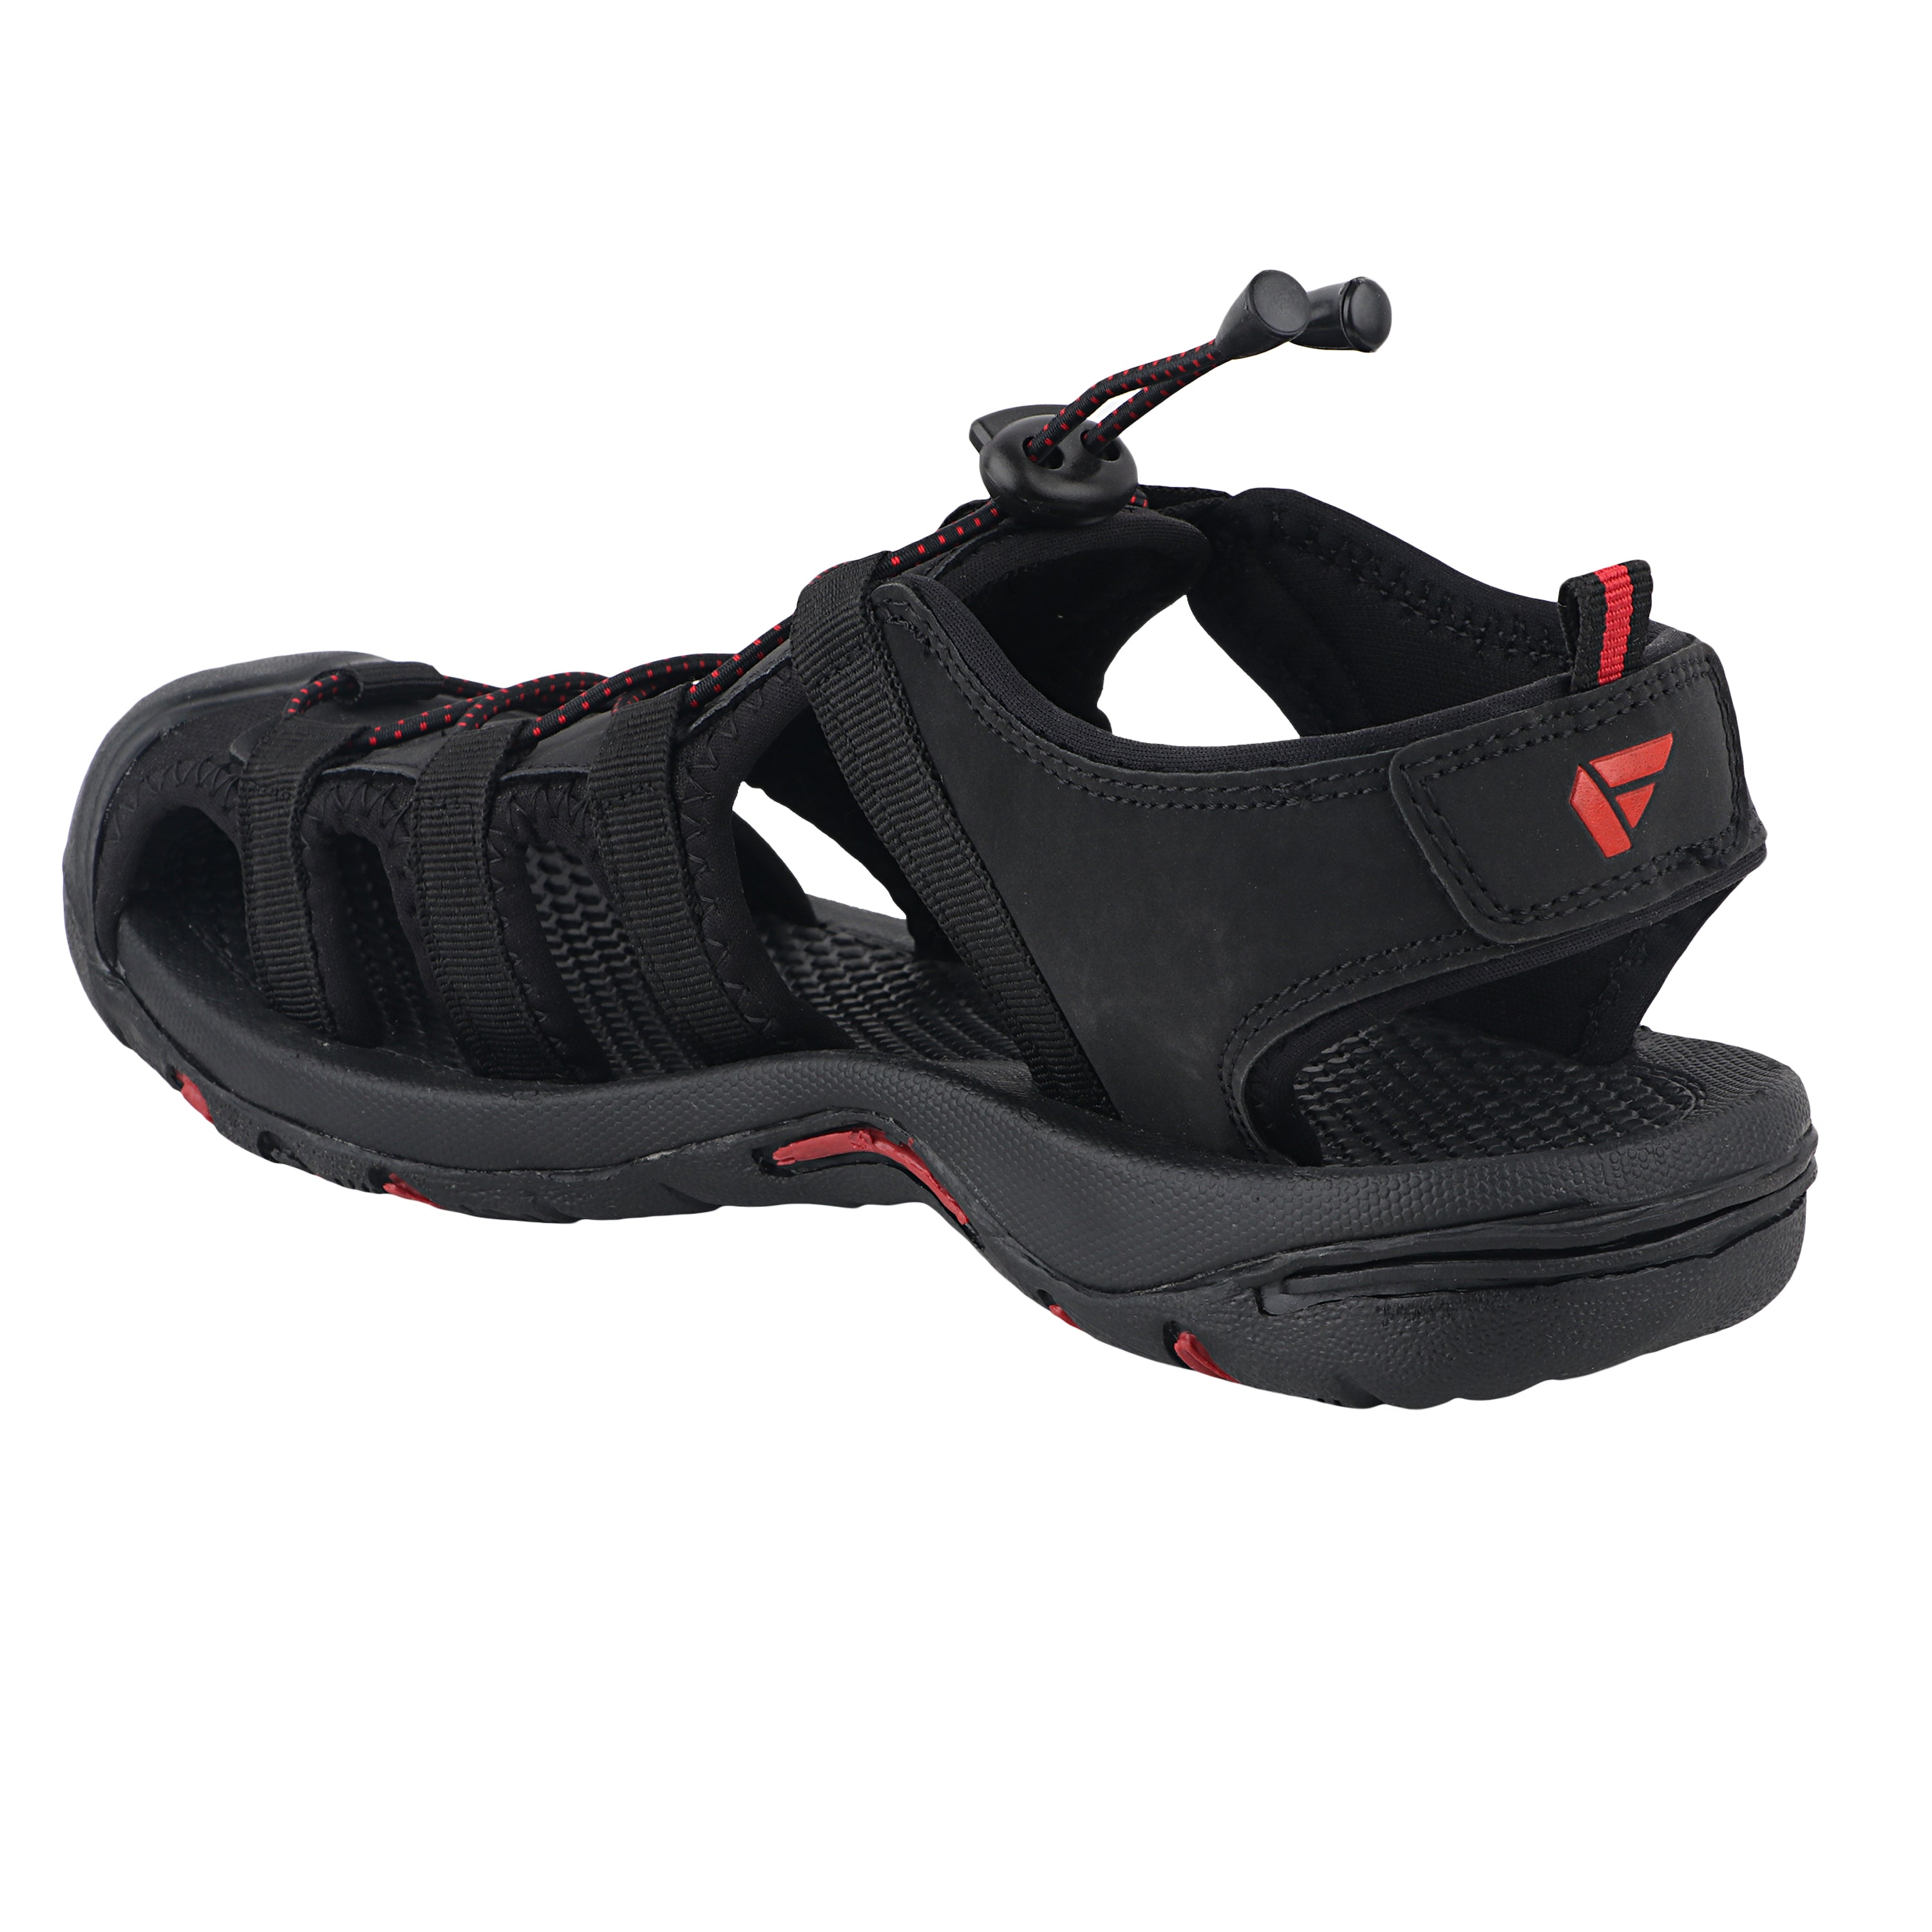 Fuel Soldier-06 Fisherman Sandals for Men (Black)